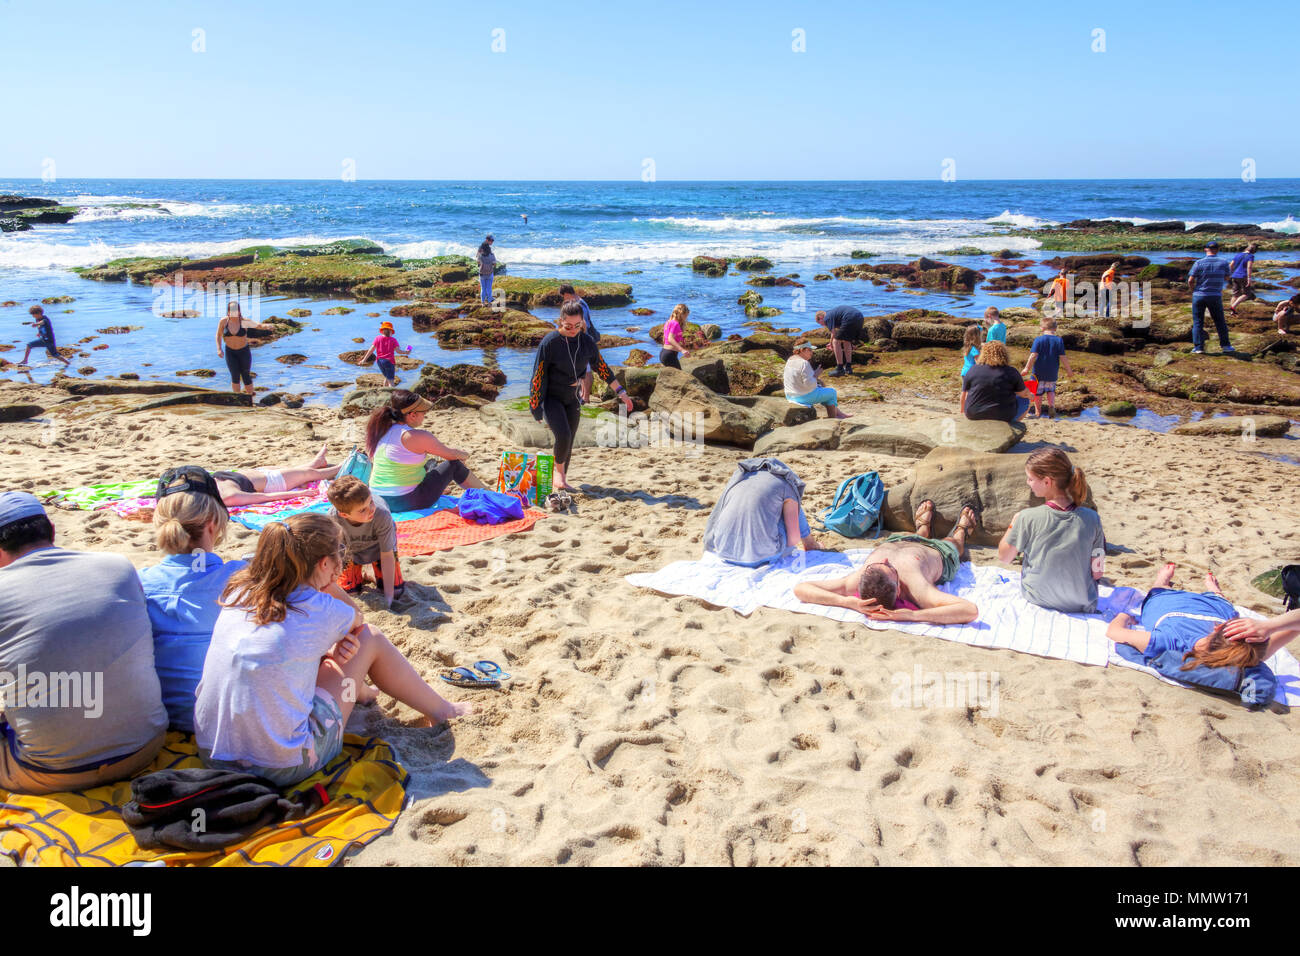 SAN DIEGO, ESTADOS UNIDOS - Mar 27, 2018: Los visitantes serpentean la playa en la popular localidad marinera de La Jollan en San Diego, California. Foto de stock